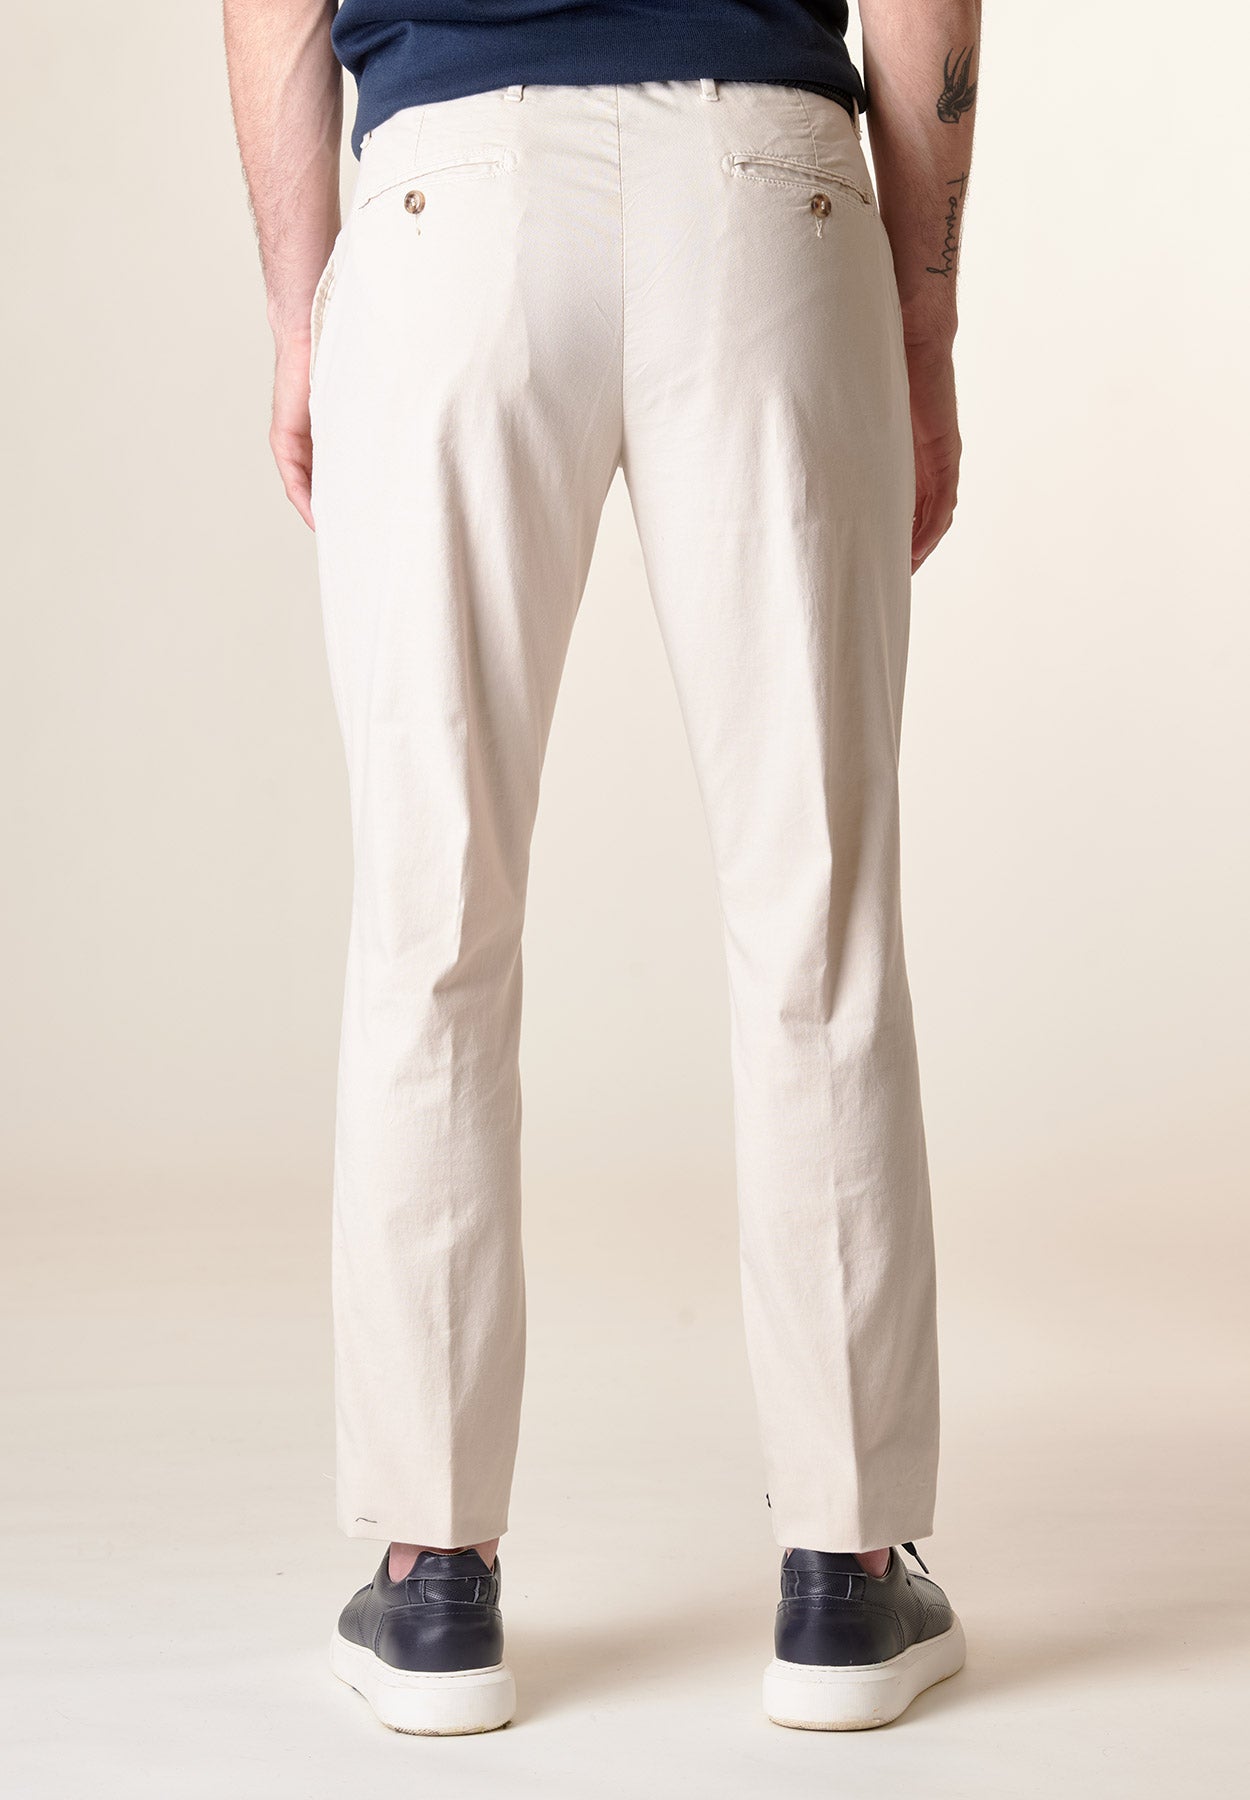 Beigefarbene Hose aus Stretch-Baumwolle mit normaler Passform